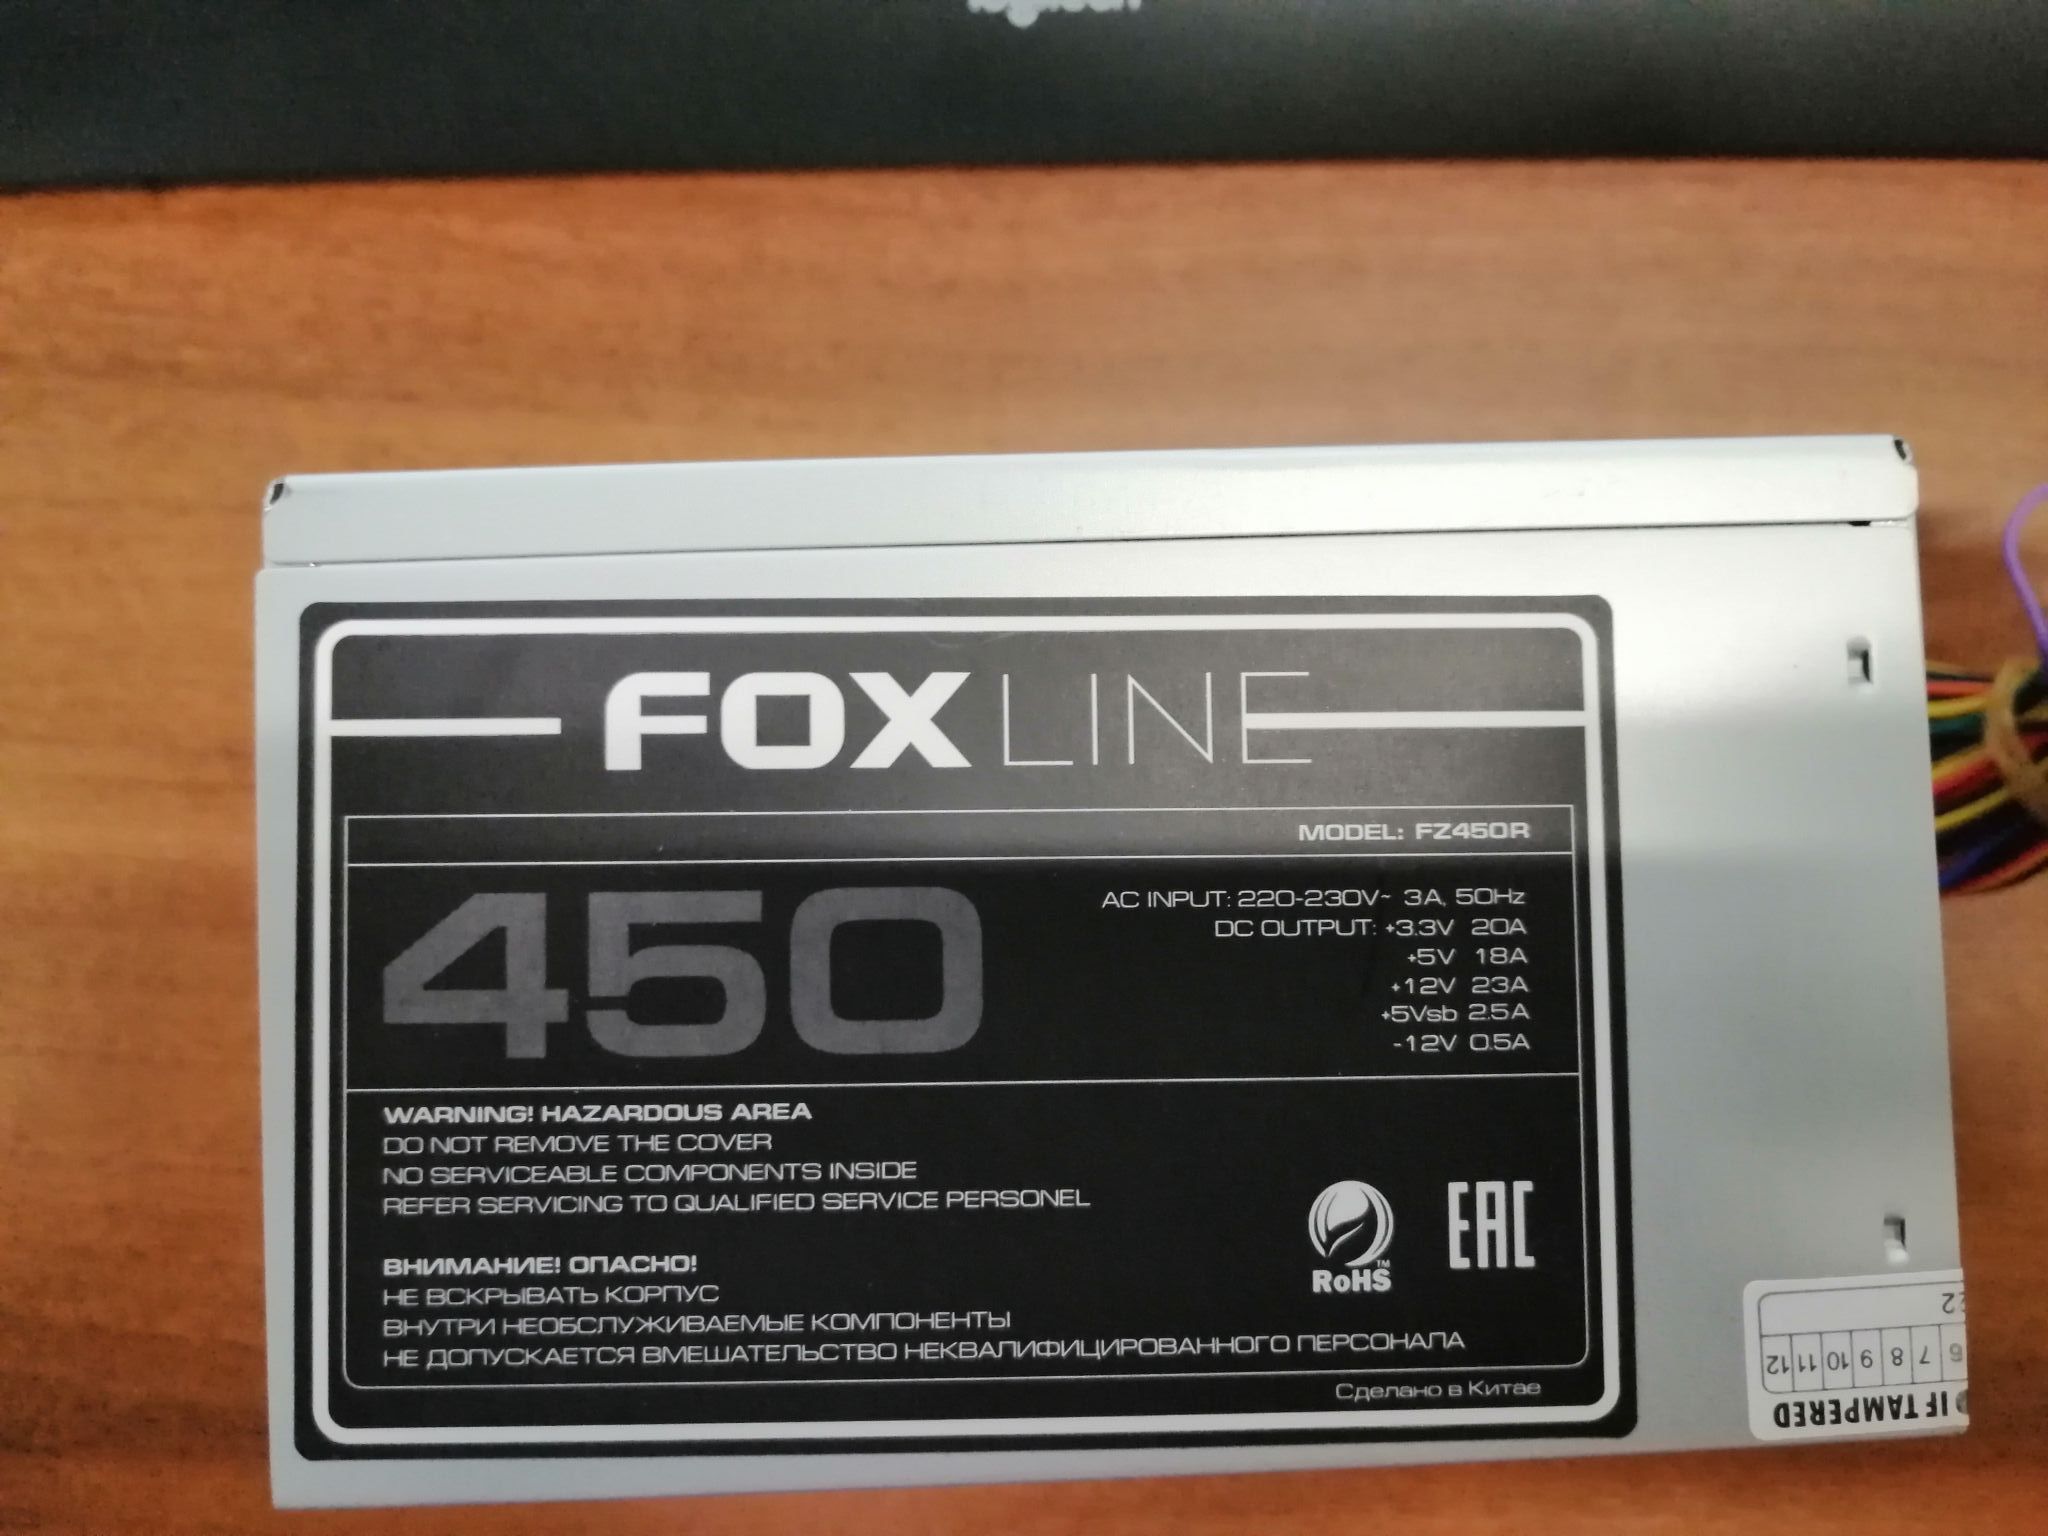 Fz450 блок питания. Блок питания Foxline 450w. Foxline fz450r |fz450r| 450w. Foxline FZ-450r что внутри. Foxline fz450r